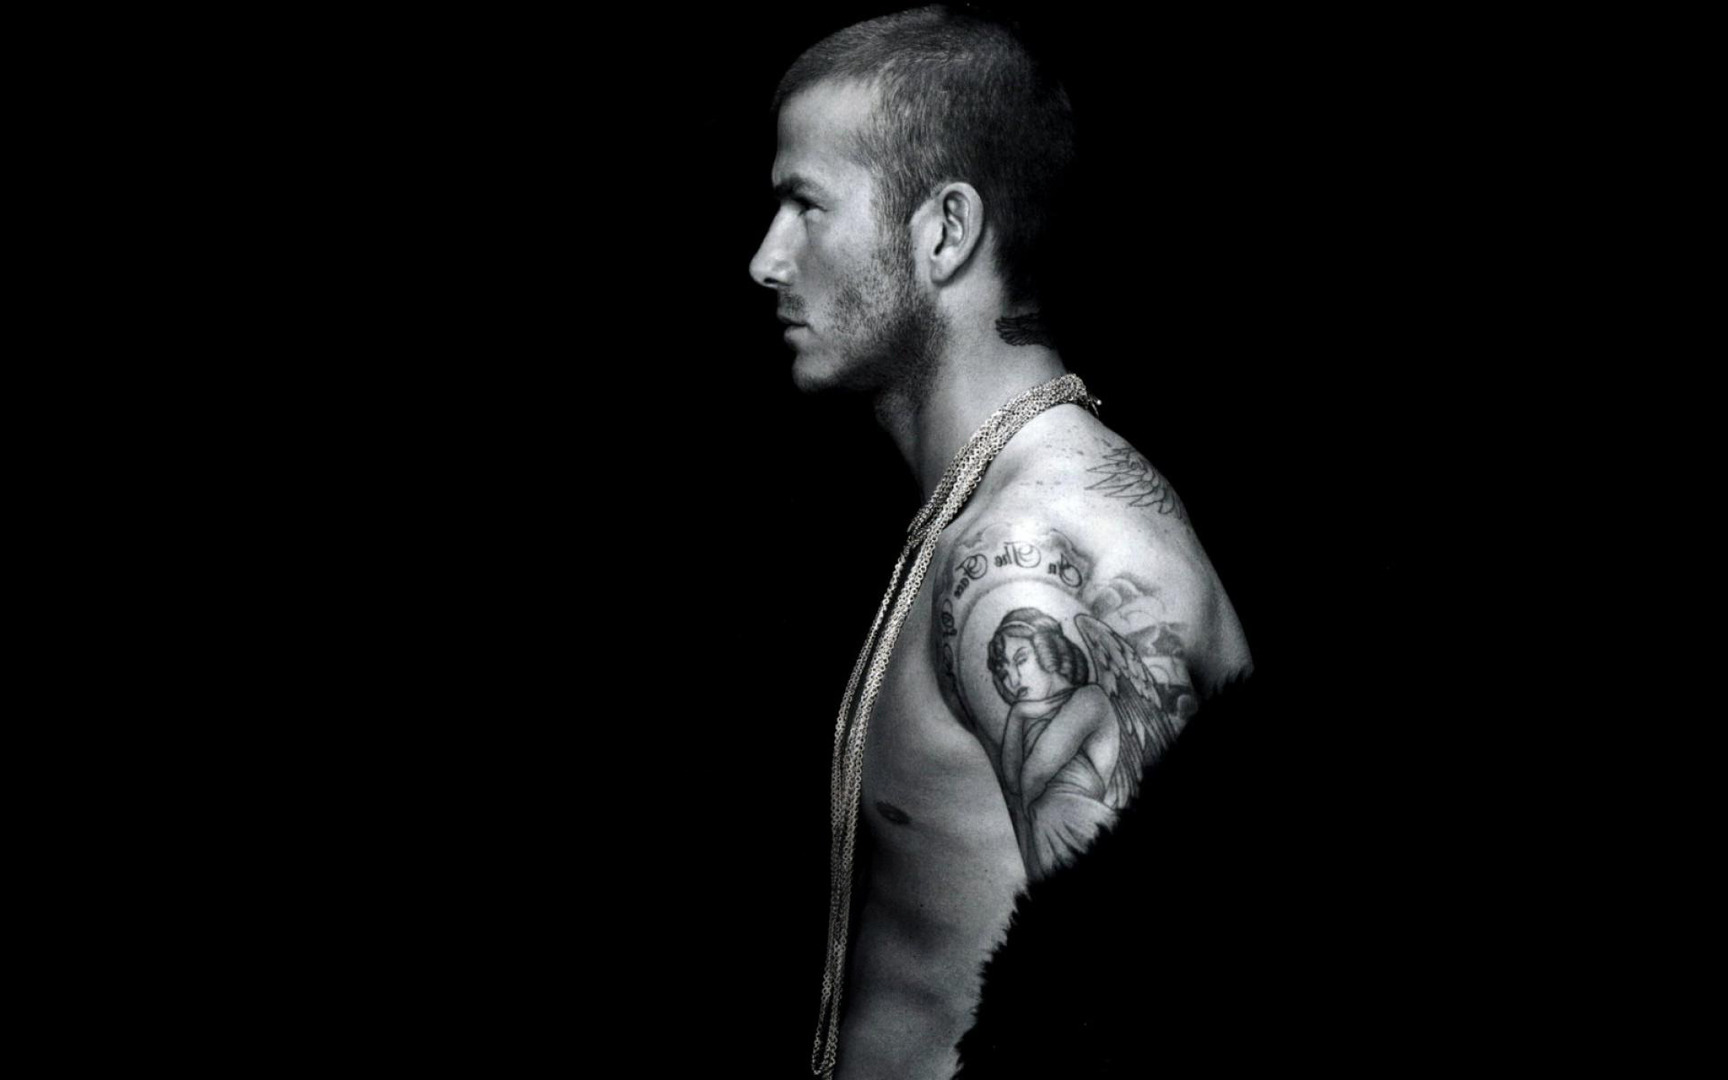 David Beckham Wallpaper High Definition Quality